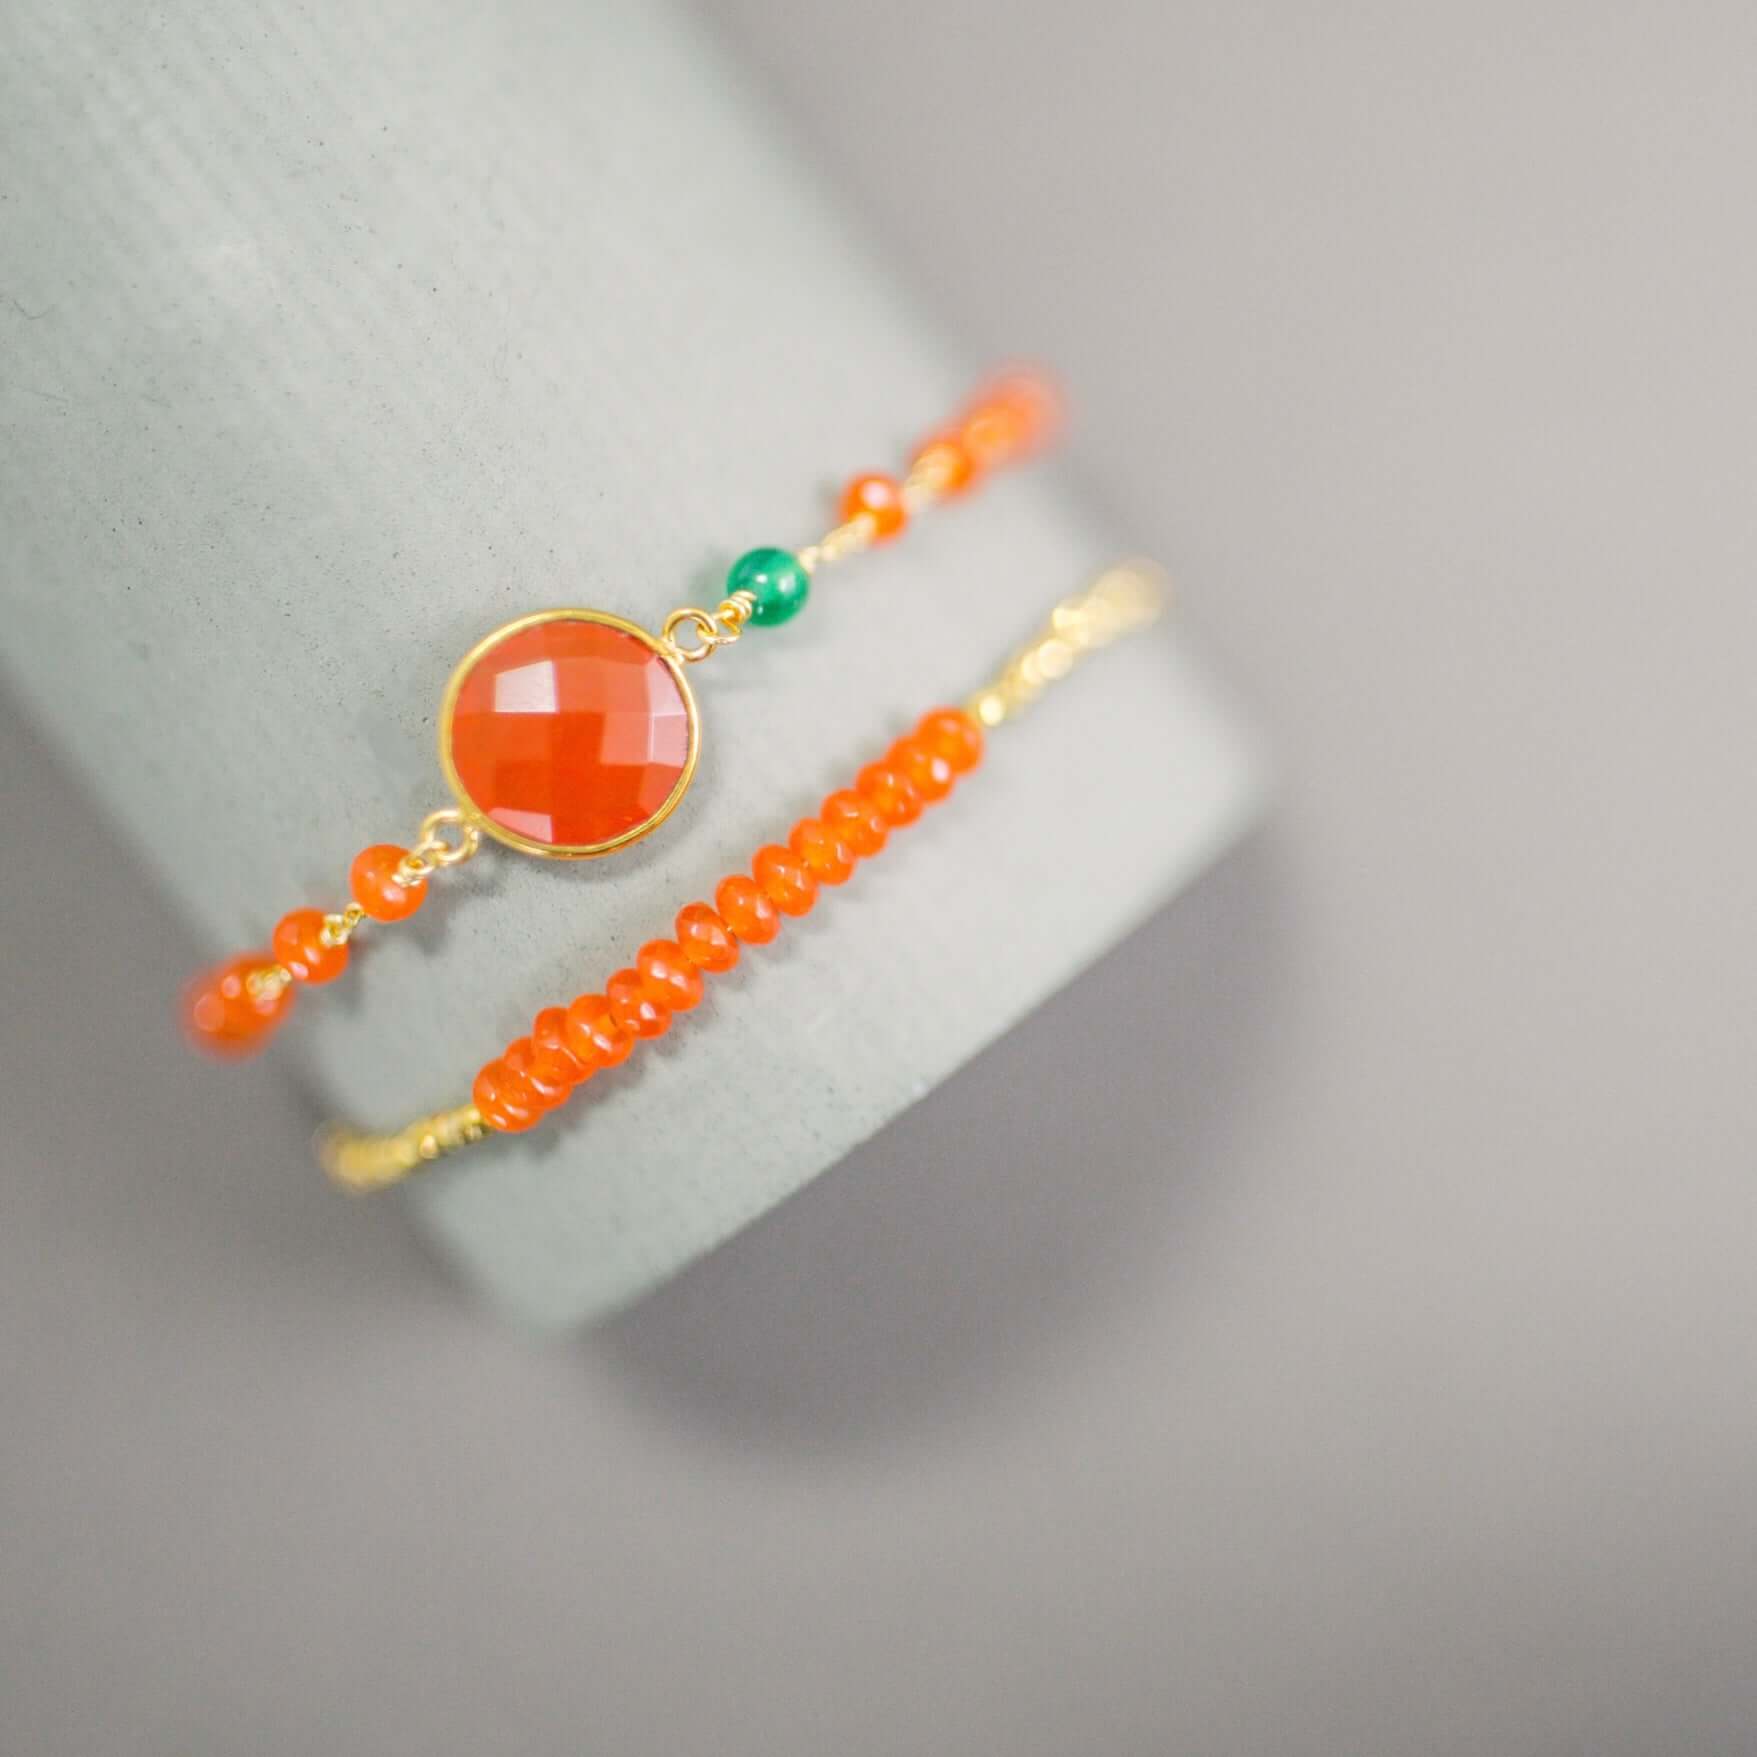 Bold Orange Carnelian Stacking Bracelet Set - A Burst of Courage, Energy, and Joy